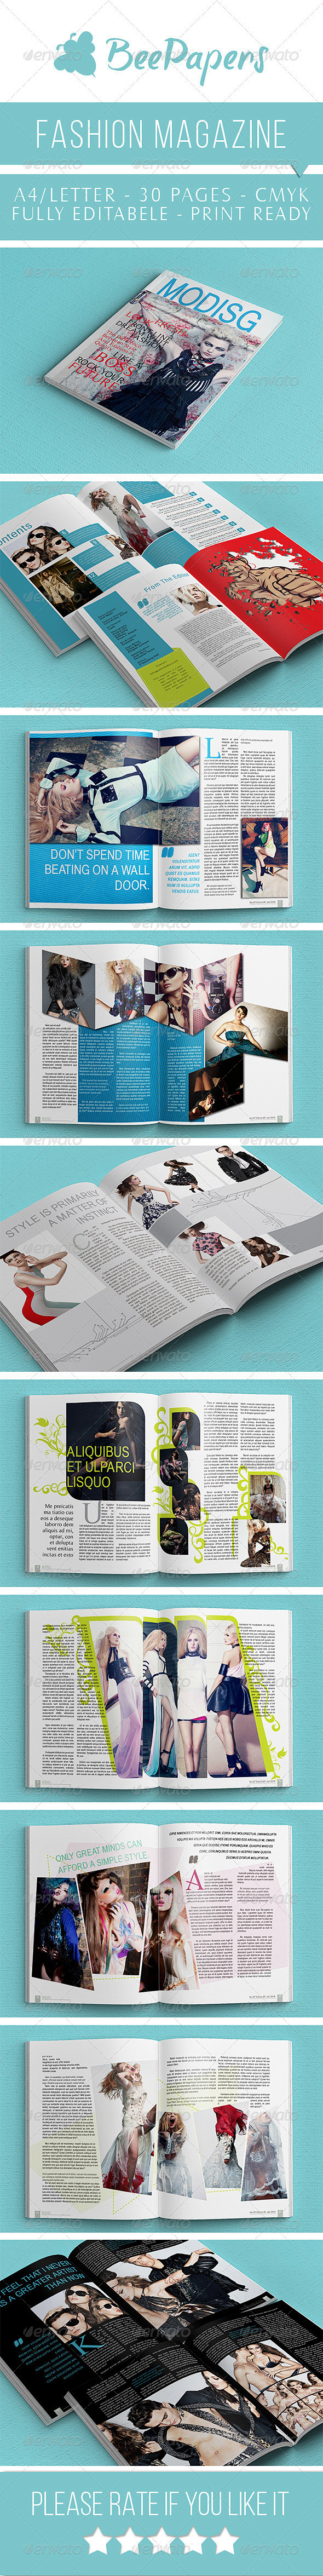 时尚杂志排版V2  - 杂志印刷模板